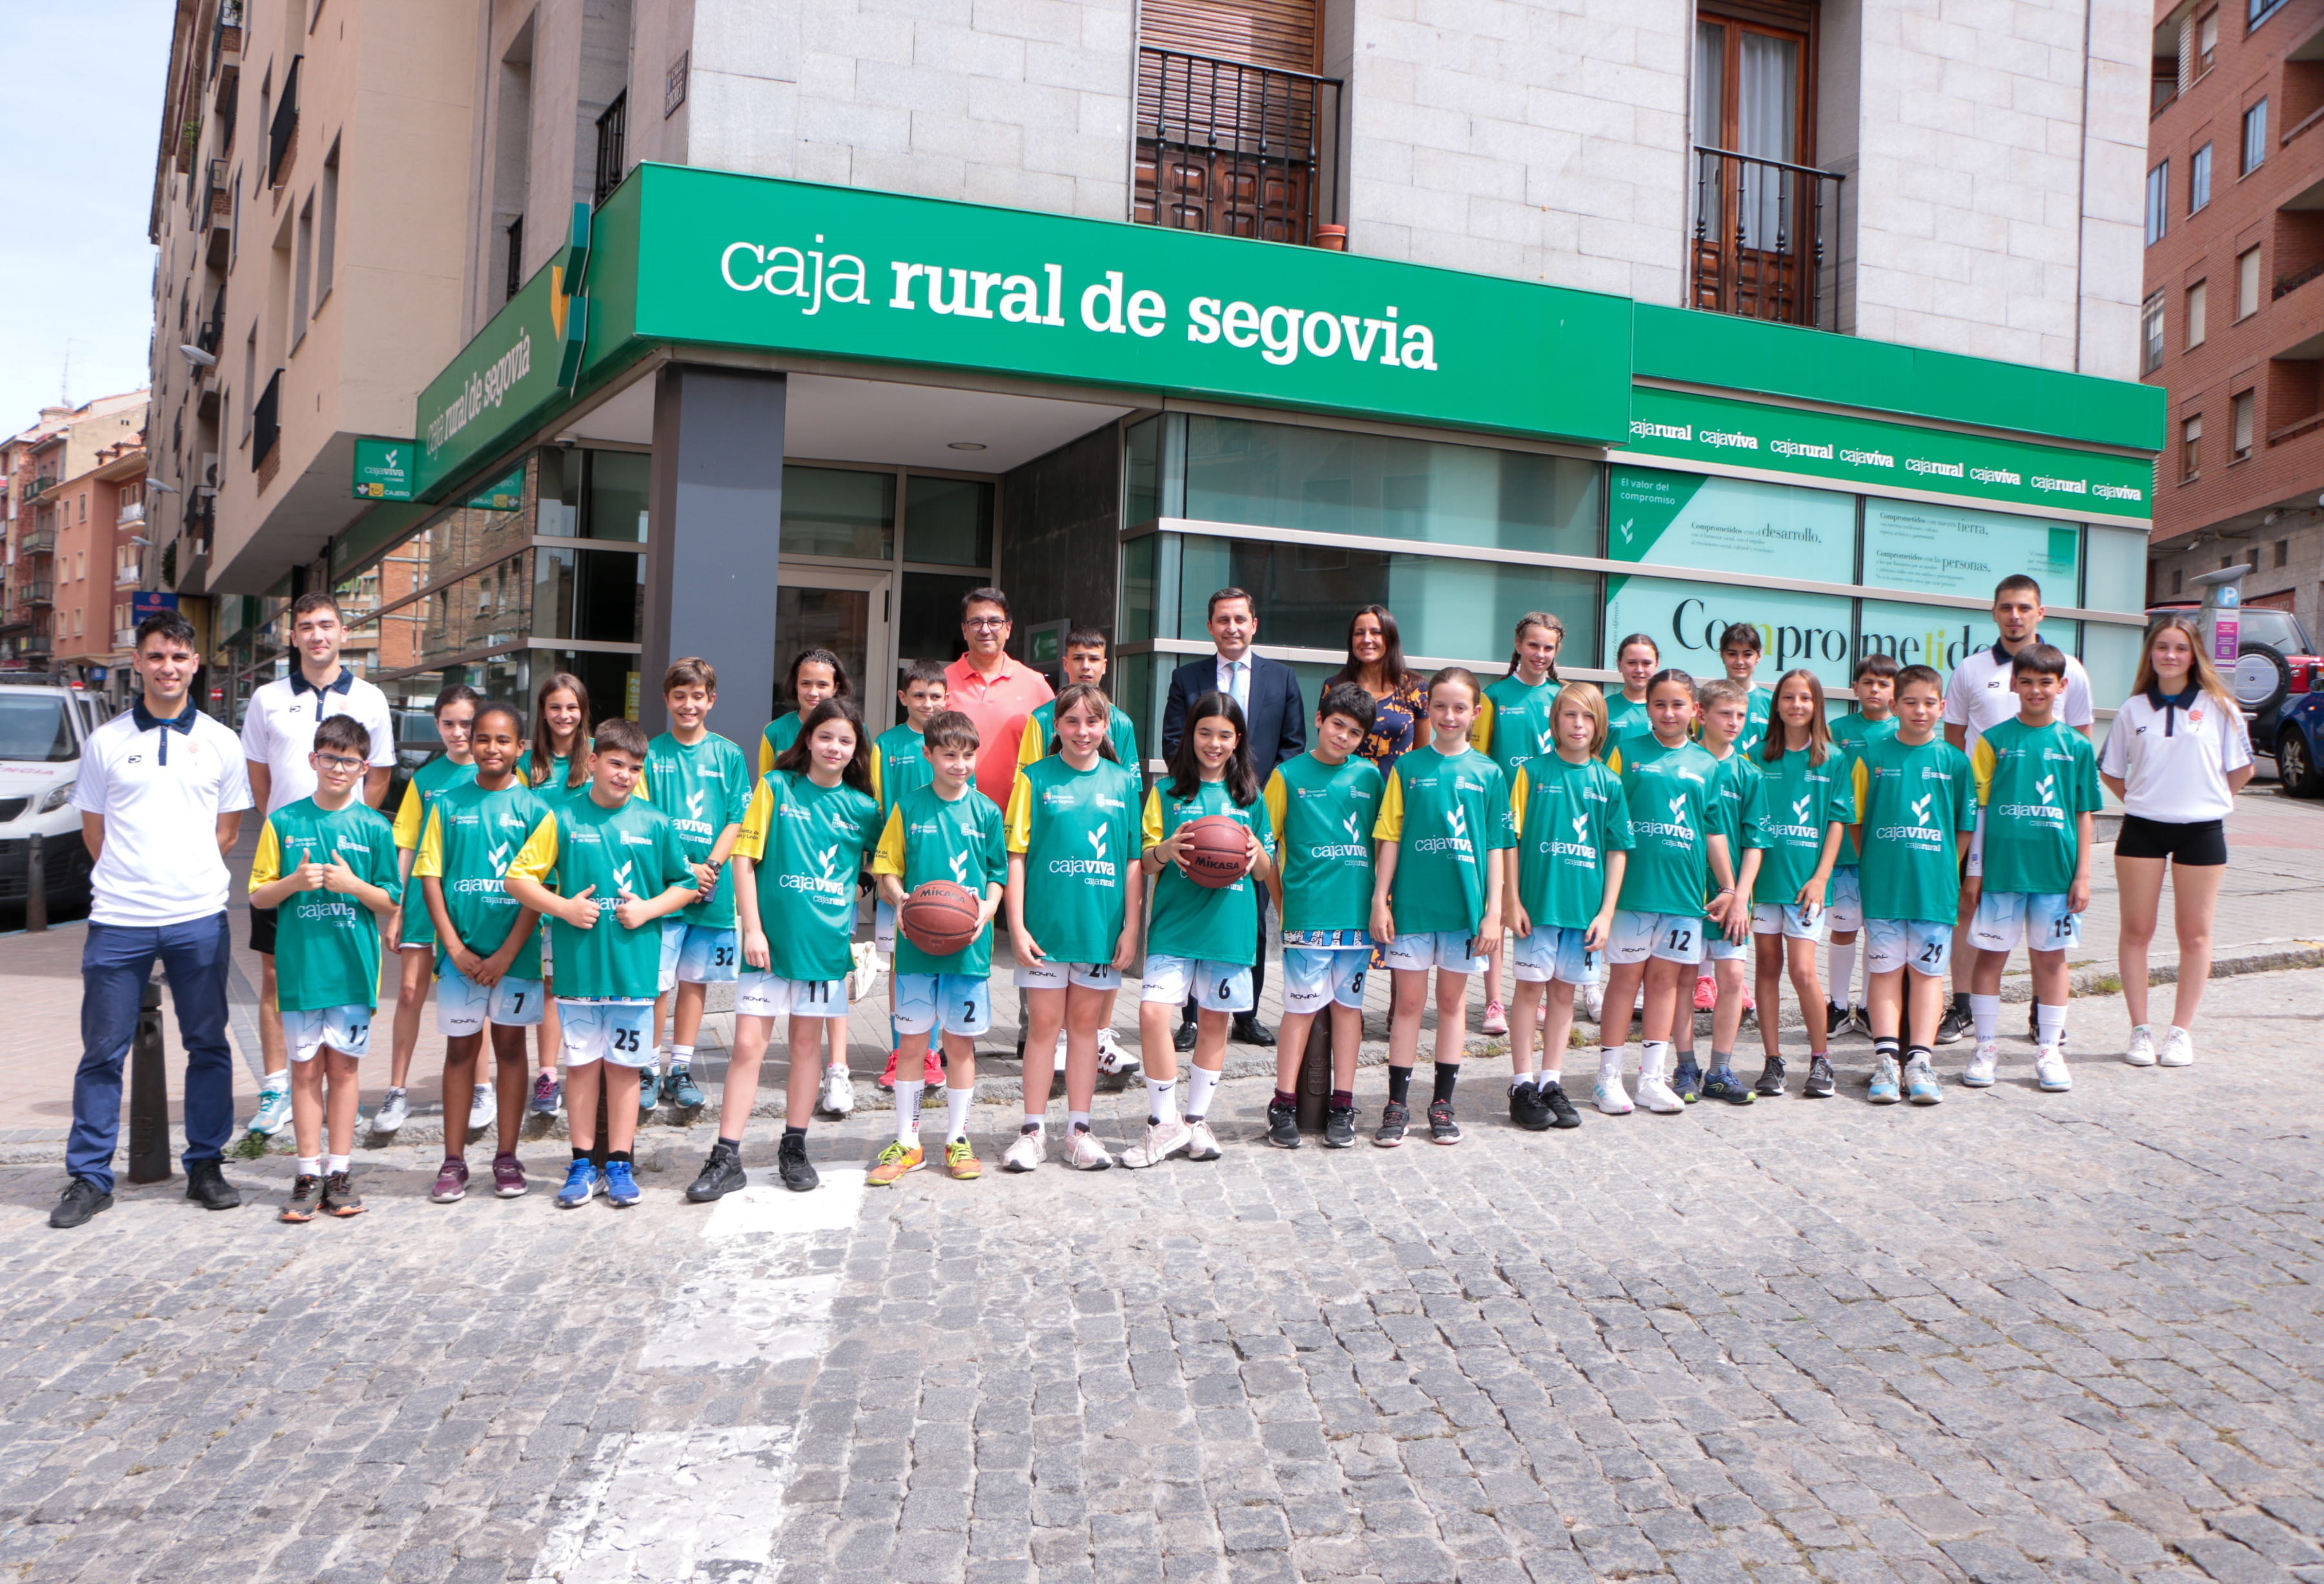 Segovia Programa Regional de Detección camino del Autonómico entre Provincias